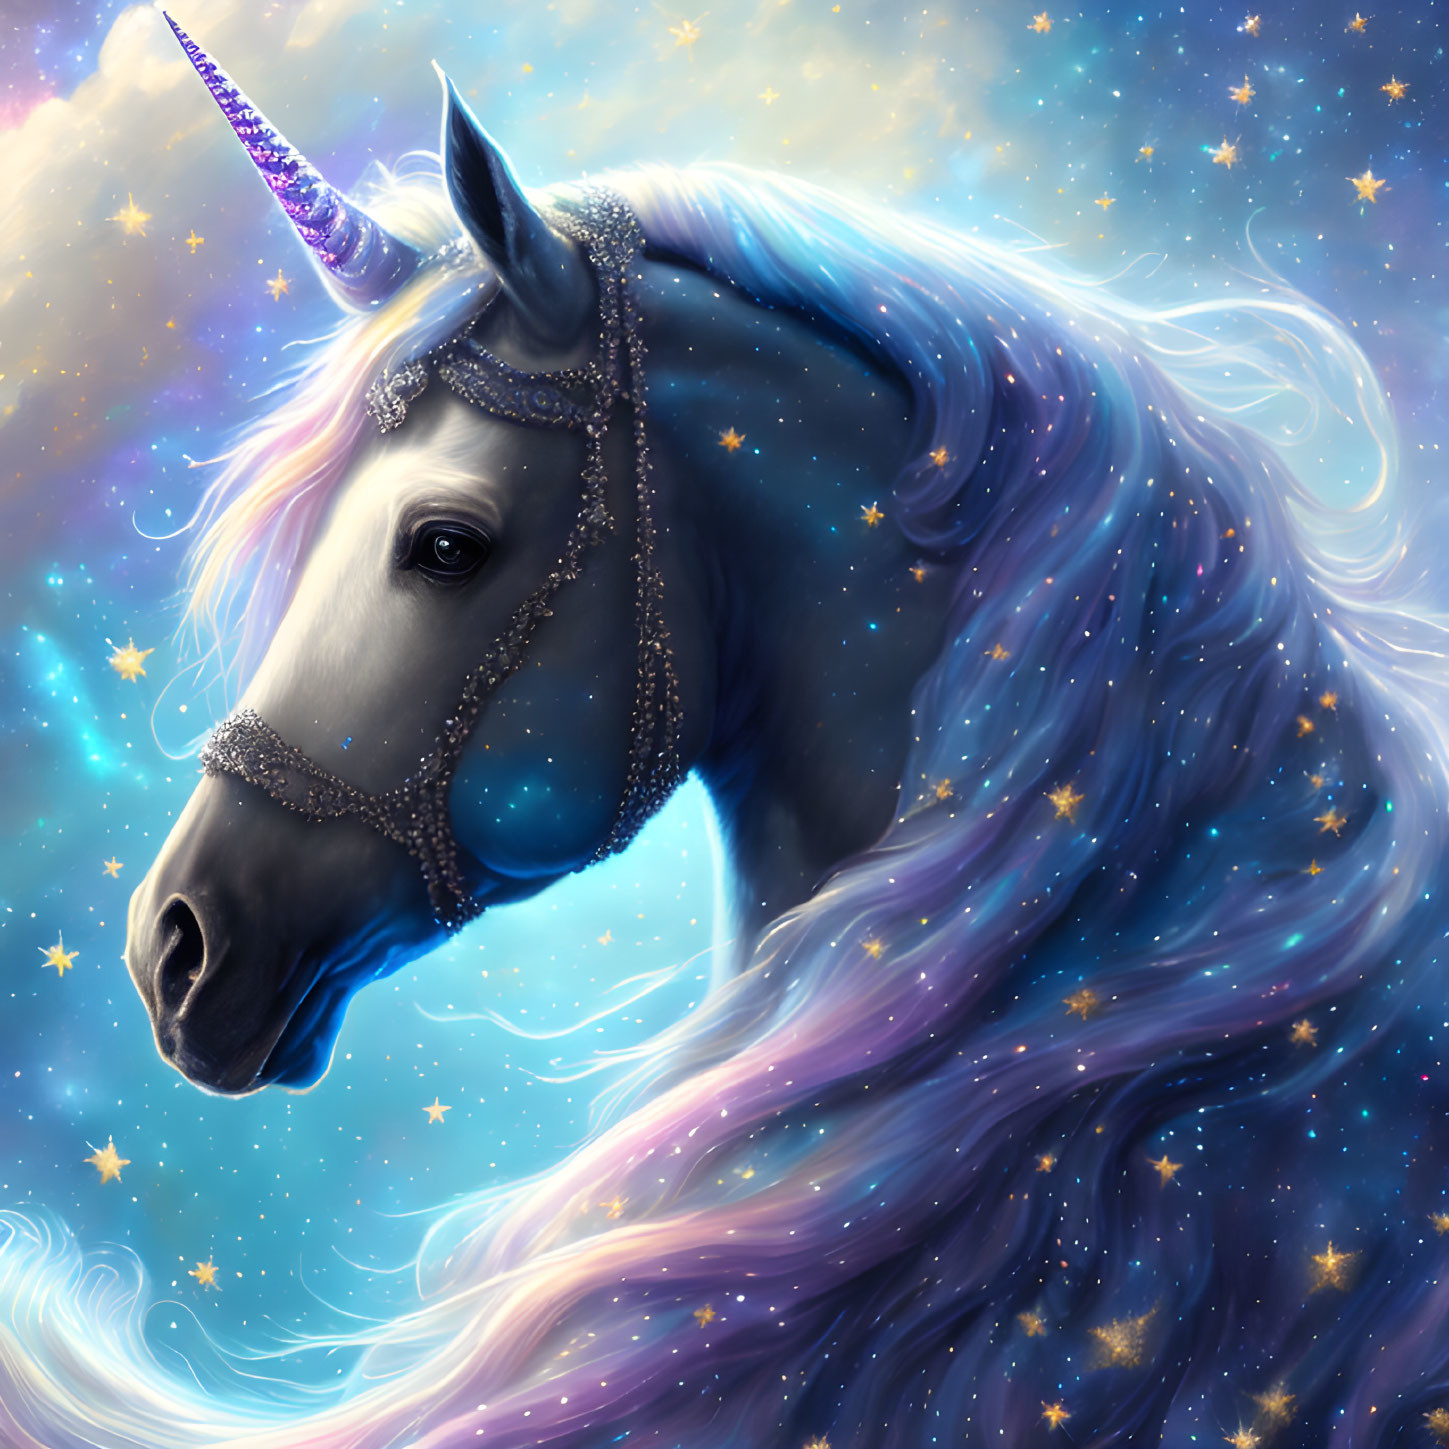 The unicorn